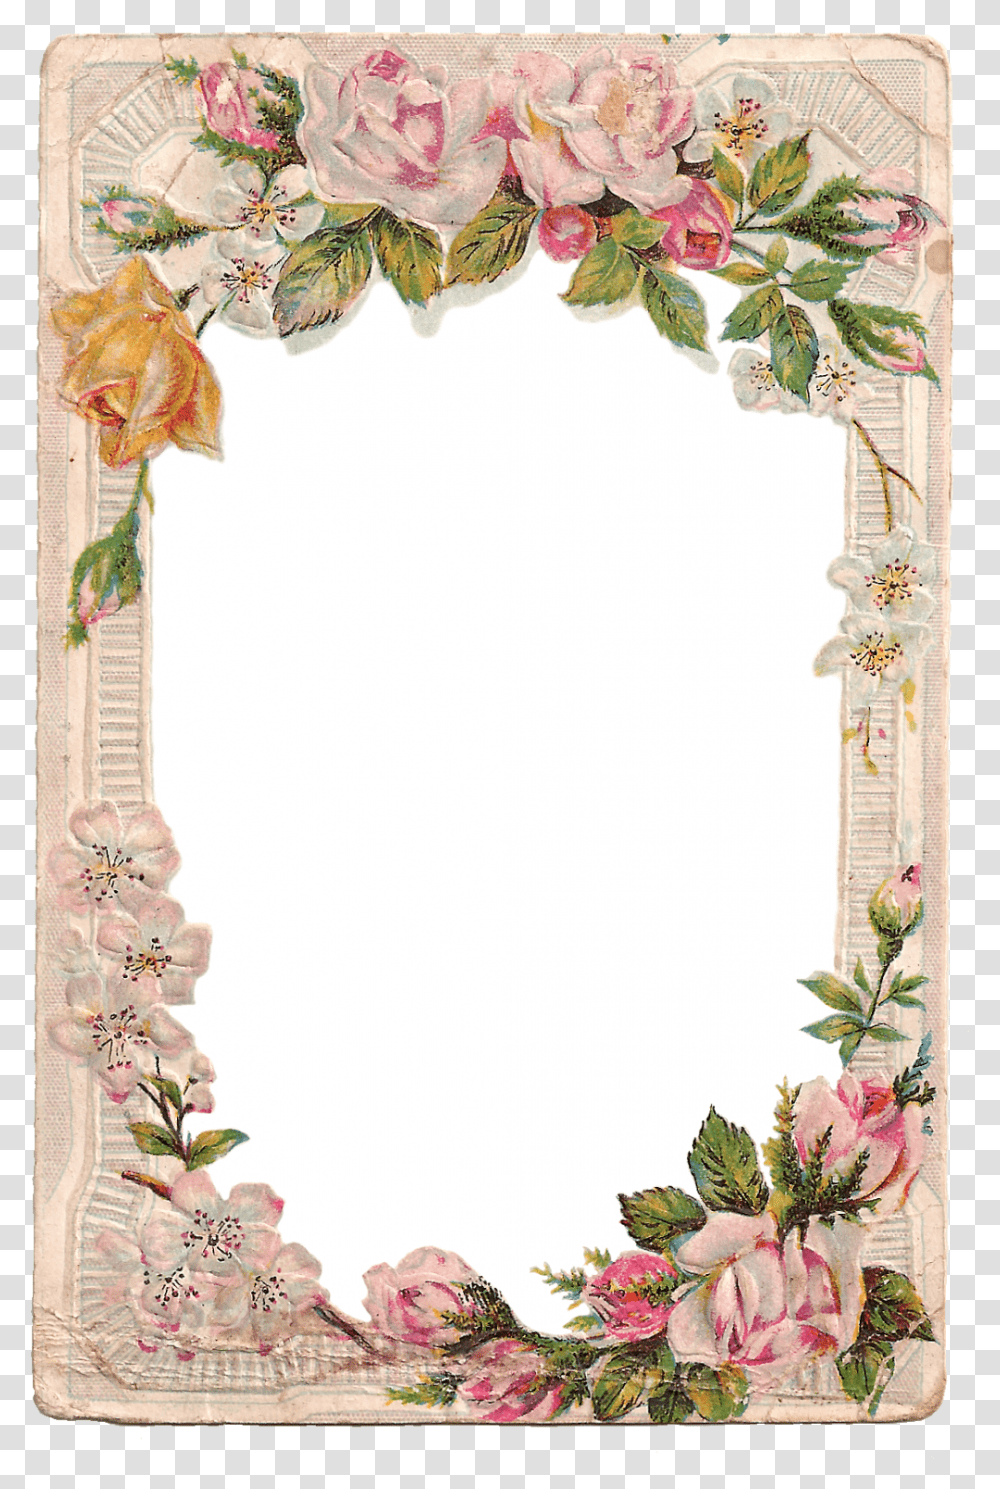 Free Vintage Digital Flower Frame With Roses And Dogwood Frame Flower Border Design, Mirror, Rug, Painting, Art Transparent Png